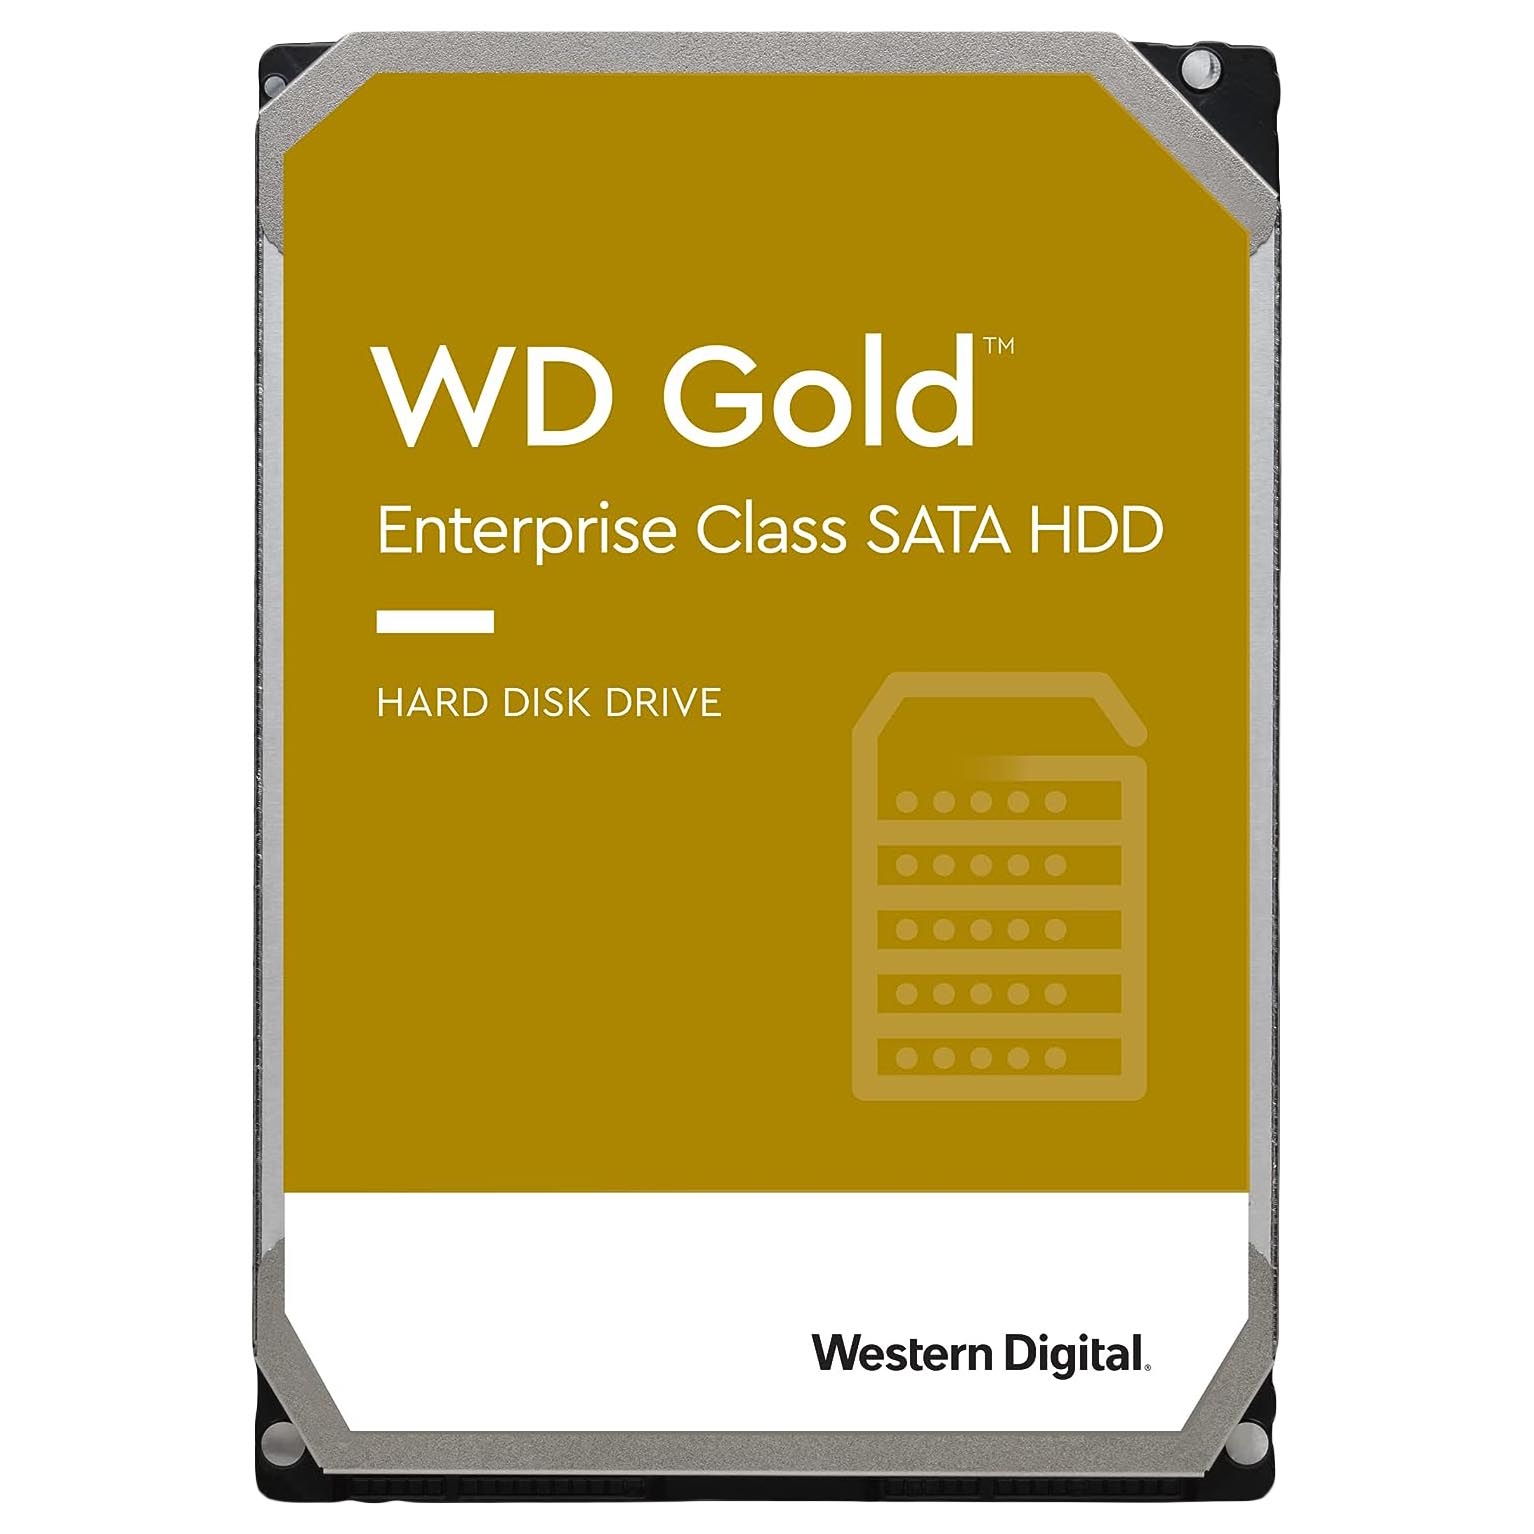 Внутренний жесткий диск Western Digital WD Gold Enterprise Class, WD161VRYZ, 16Тб внутренний жесткий диск western digital wd red pro nas wd161kfgx 16тб